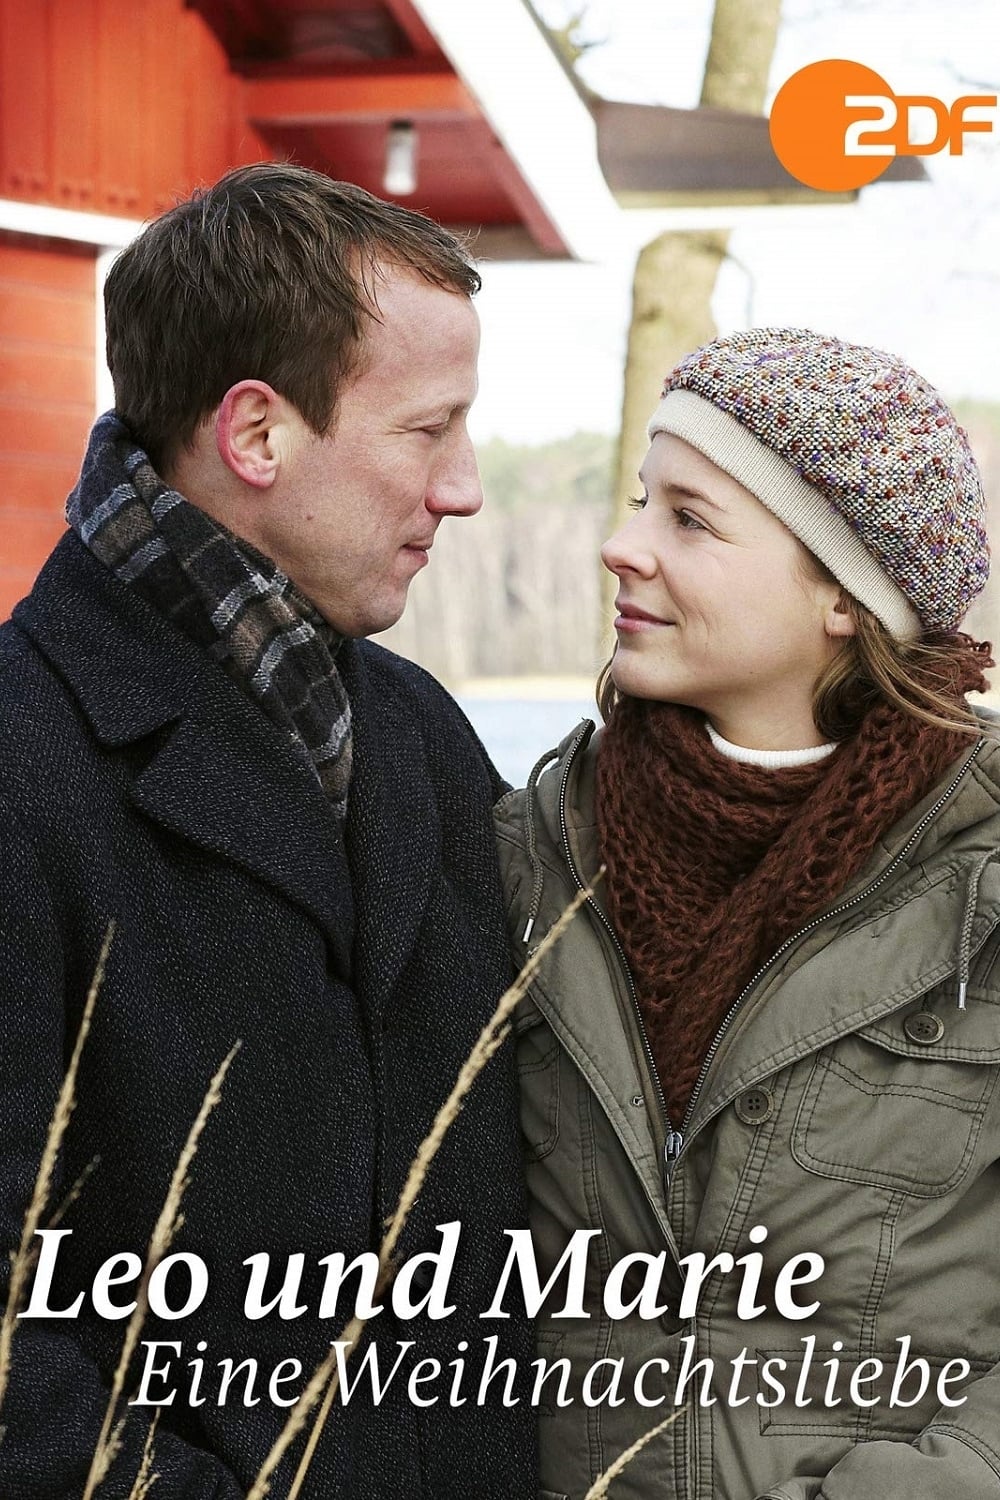 Leo und Marie – Eine Weihnachtsliebe (2008)